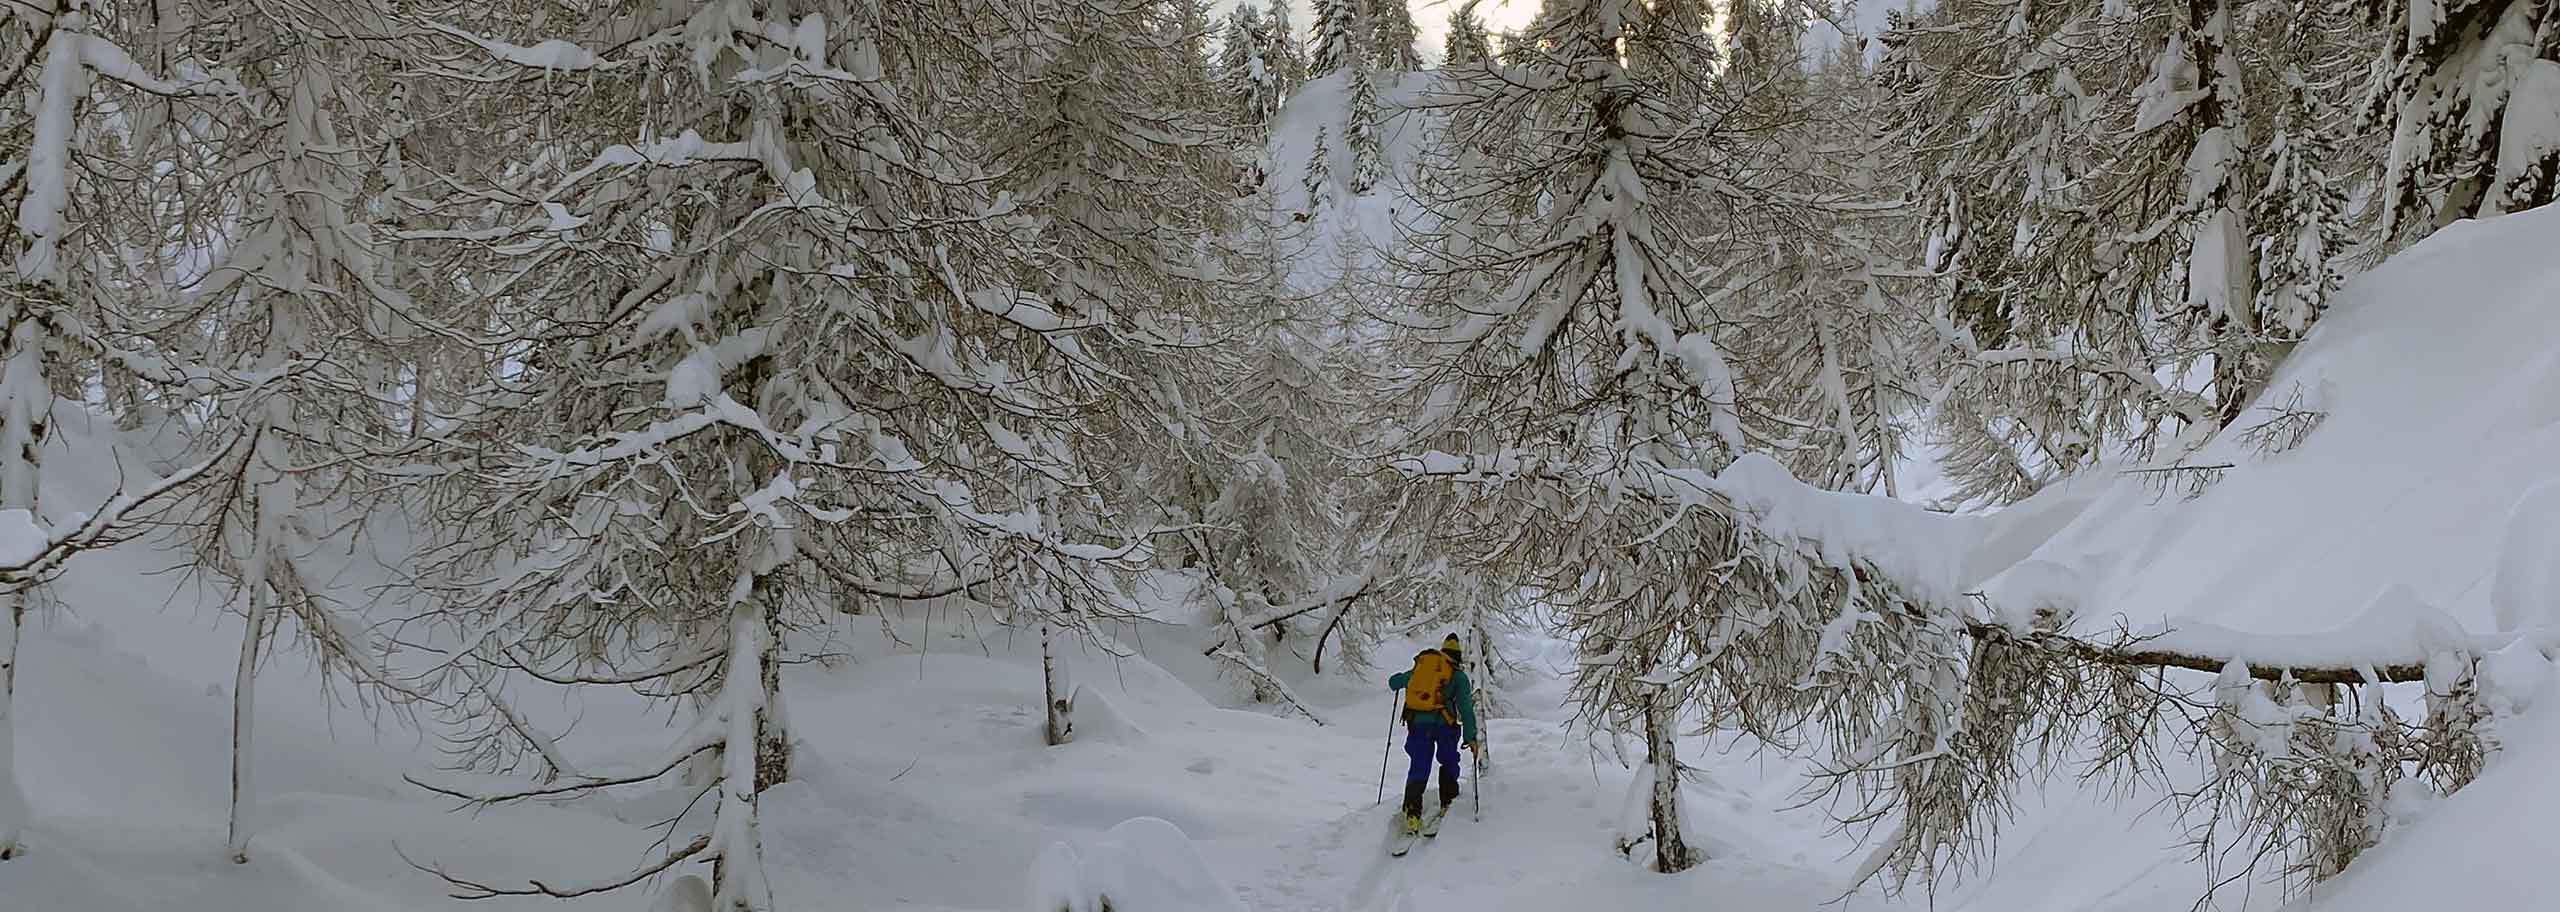 Sci Alpinismo a La Thuile, Escursioni Sci Alpinistiche in Piccolo San Bernardo